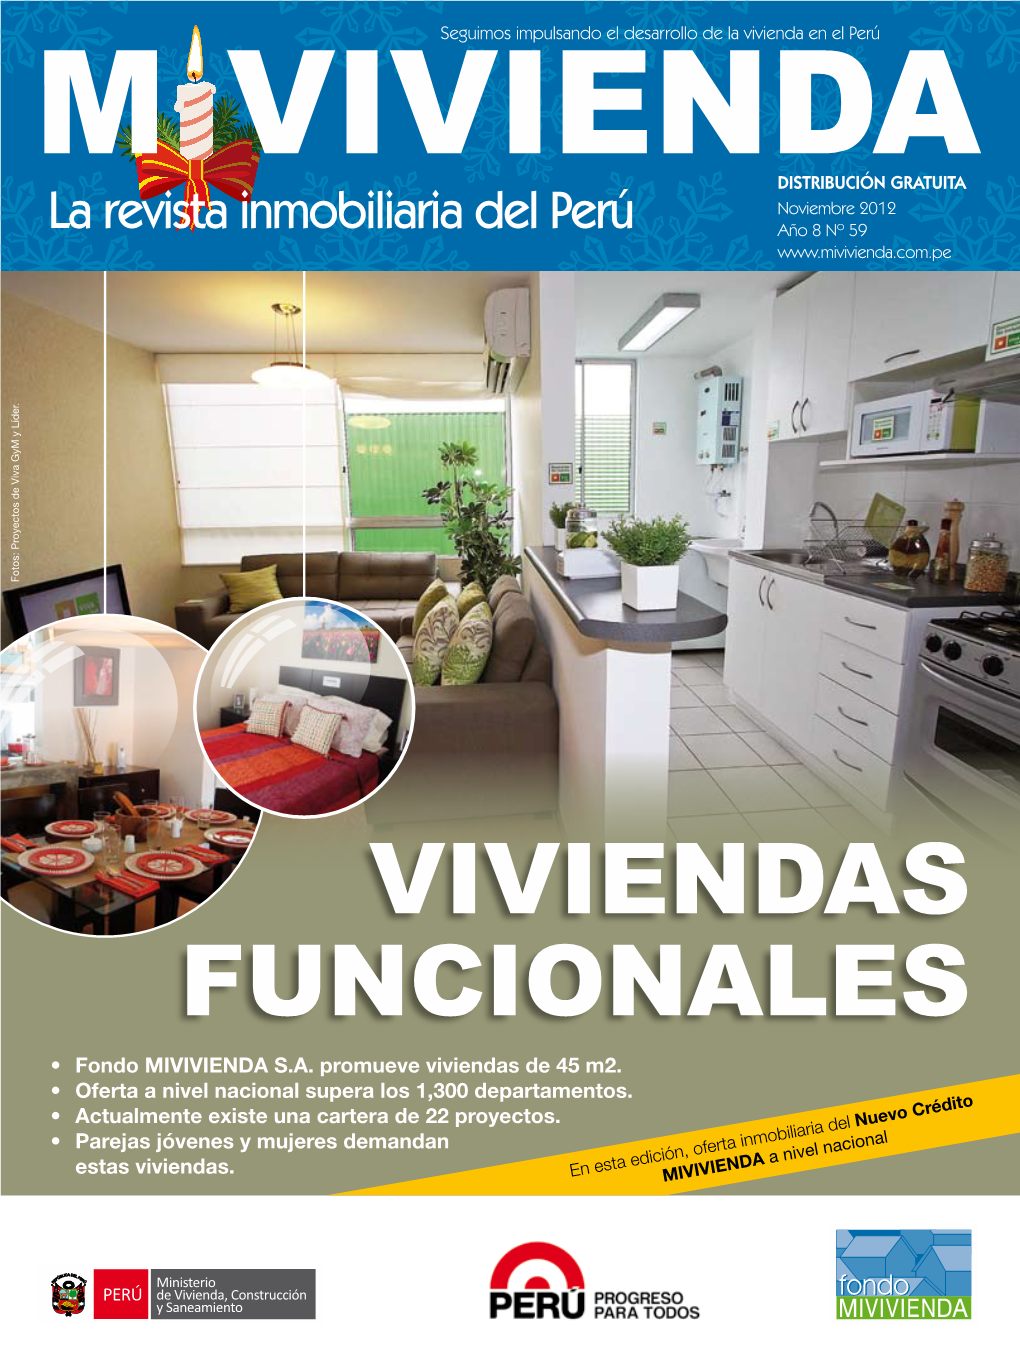 VIVIENDAS FUNCIONALES • Fondo MIVIVIENDA S.A